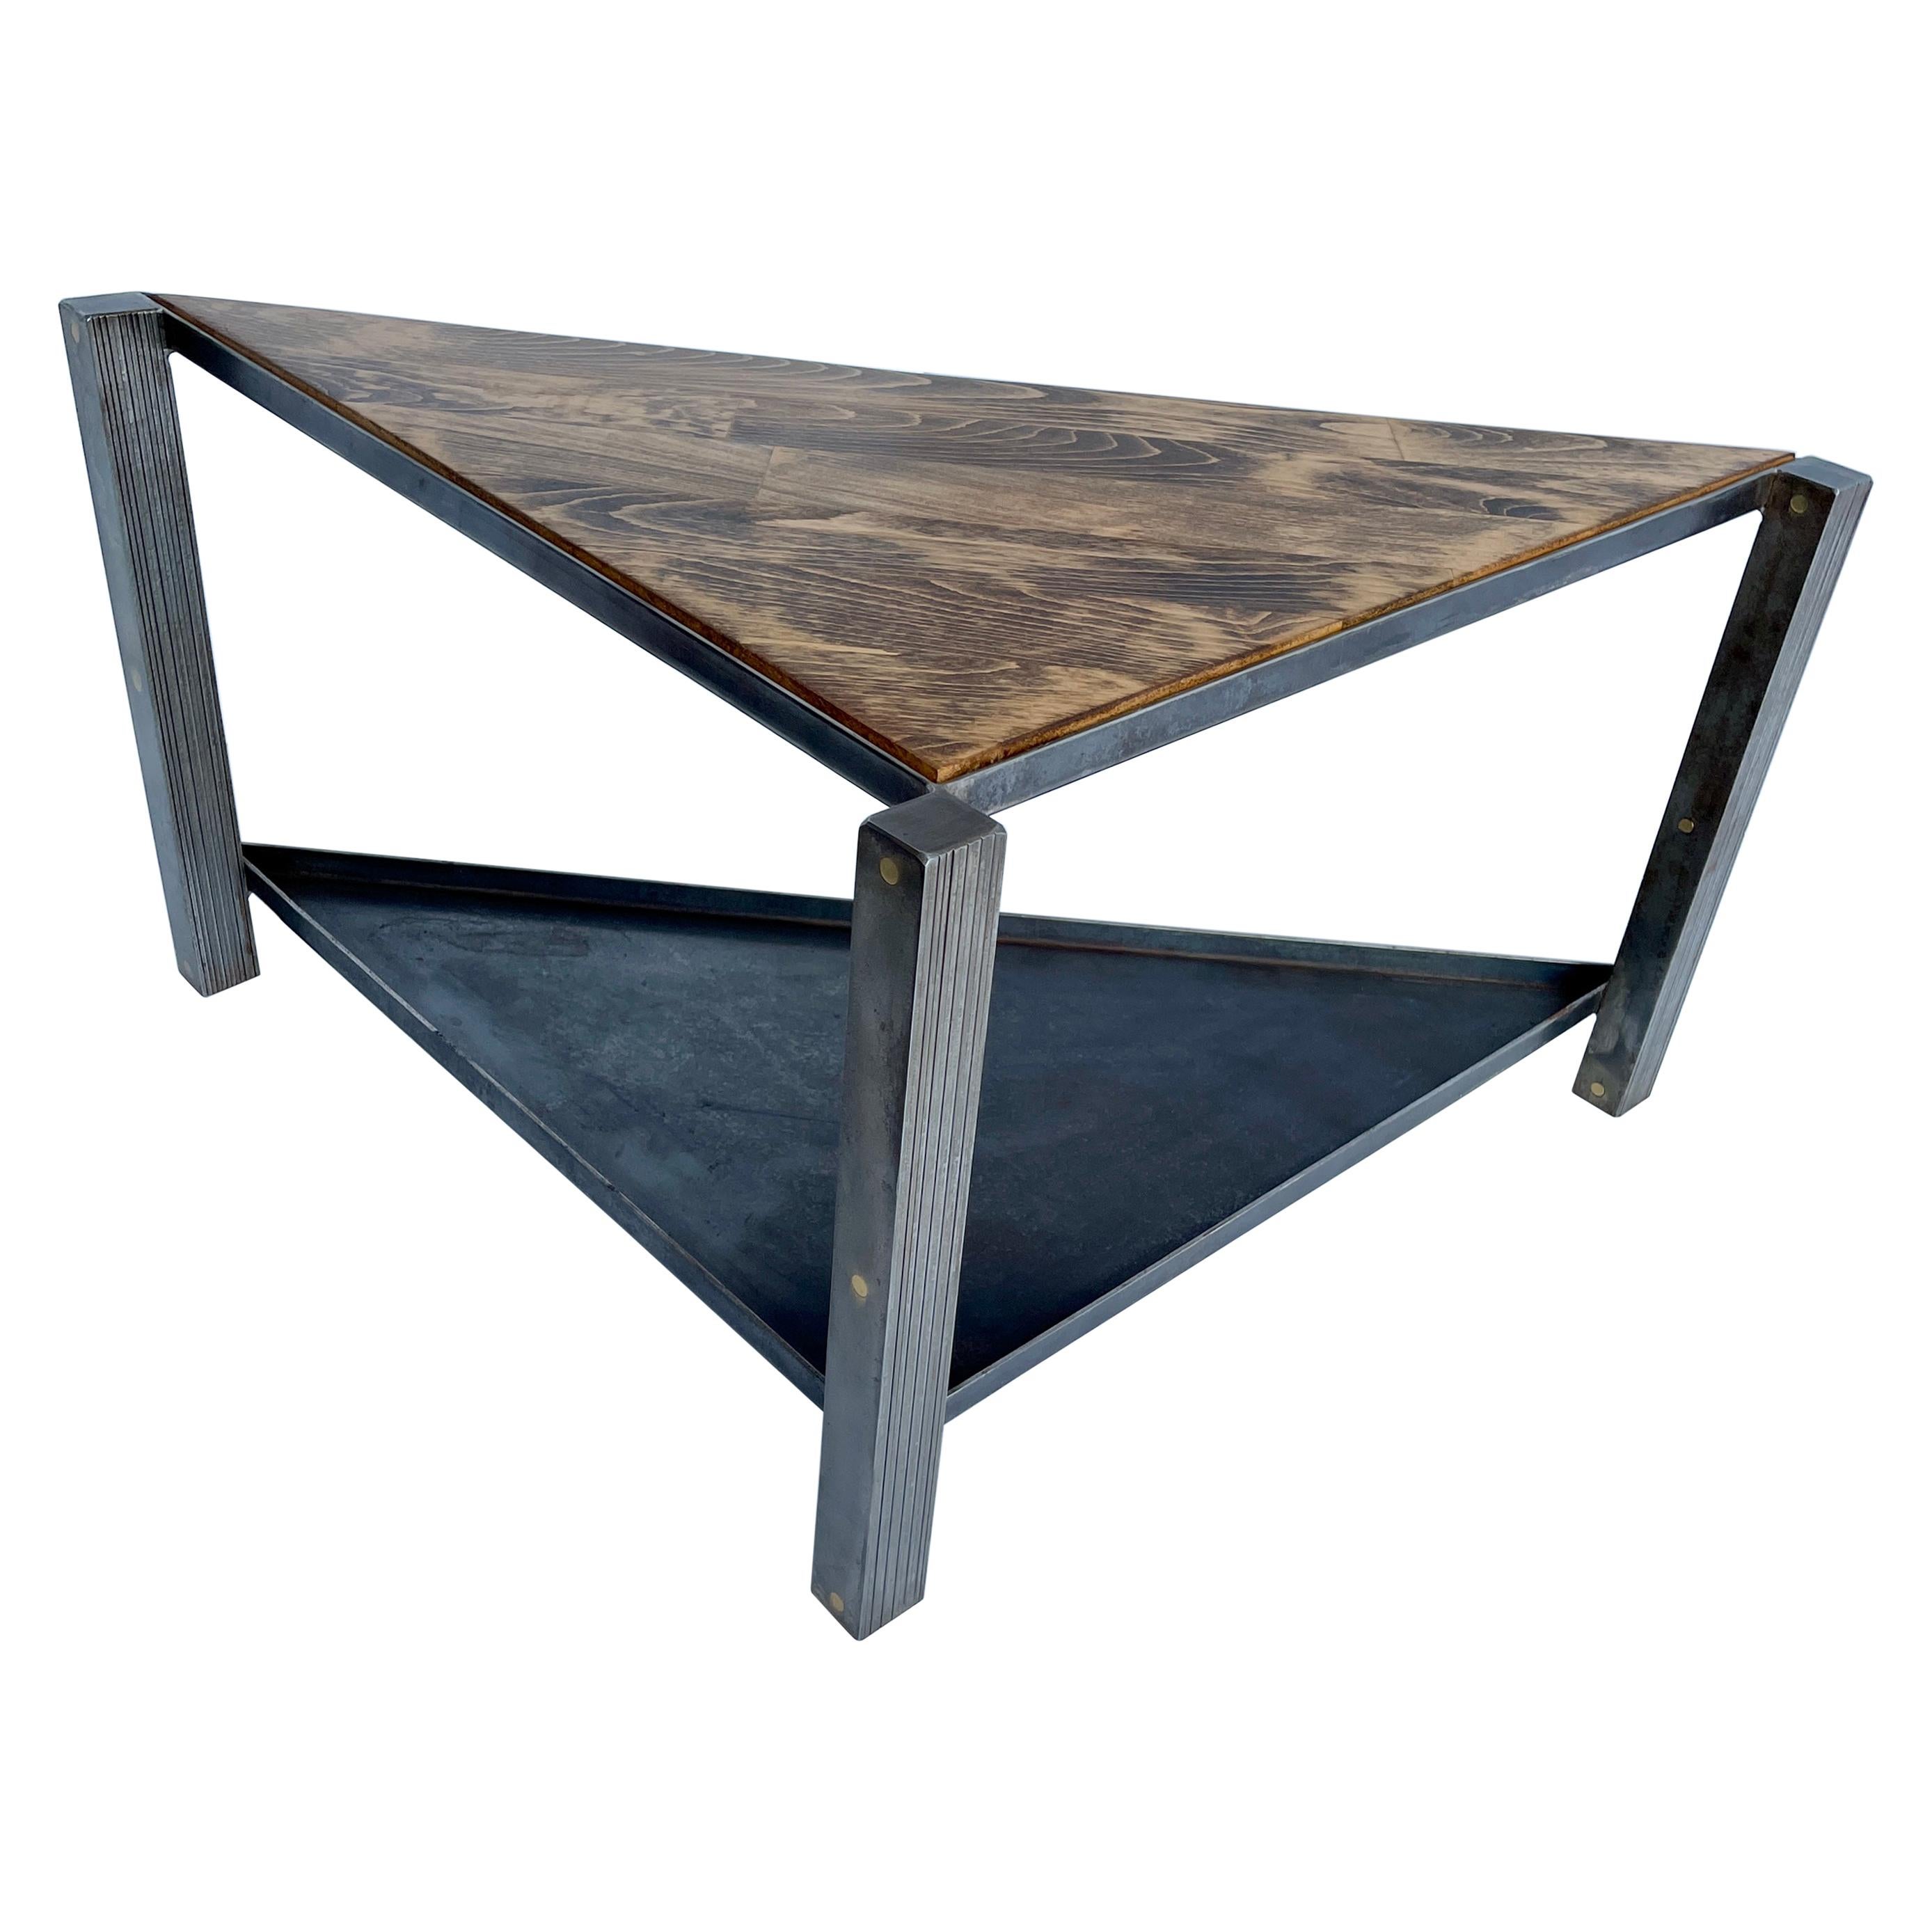 Industrieller dreieckiger Tisch aus Edelstahl mit Tischplatte aus Eichenholz, modern